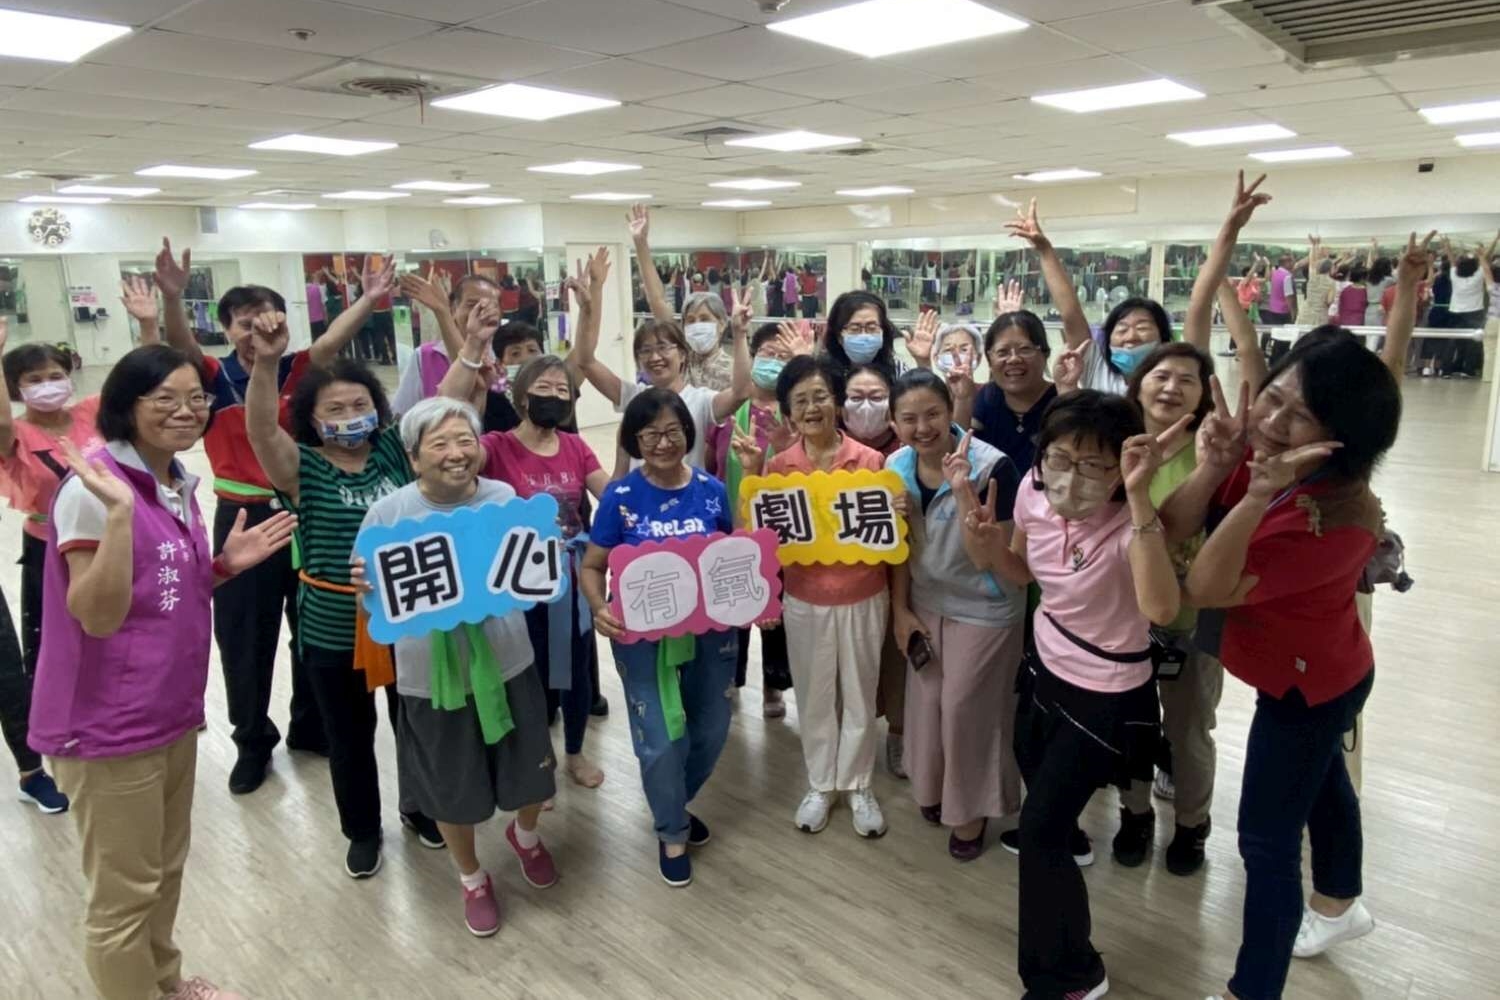 竹市東區樂齡學習中心十年有成 教育處副處長視察與學員同樂活動照片